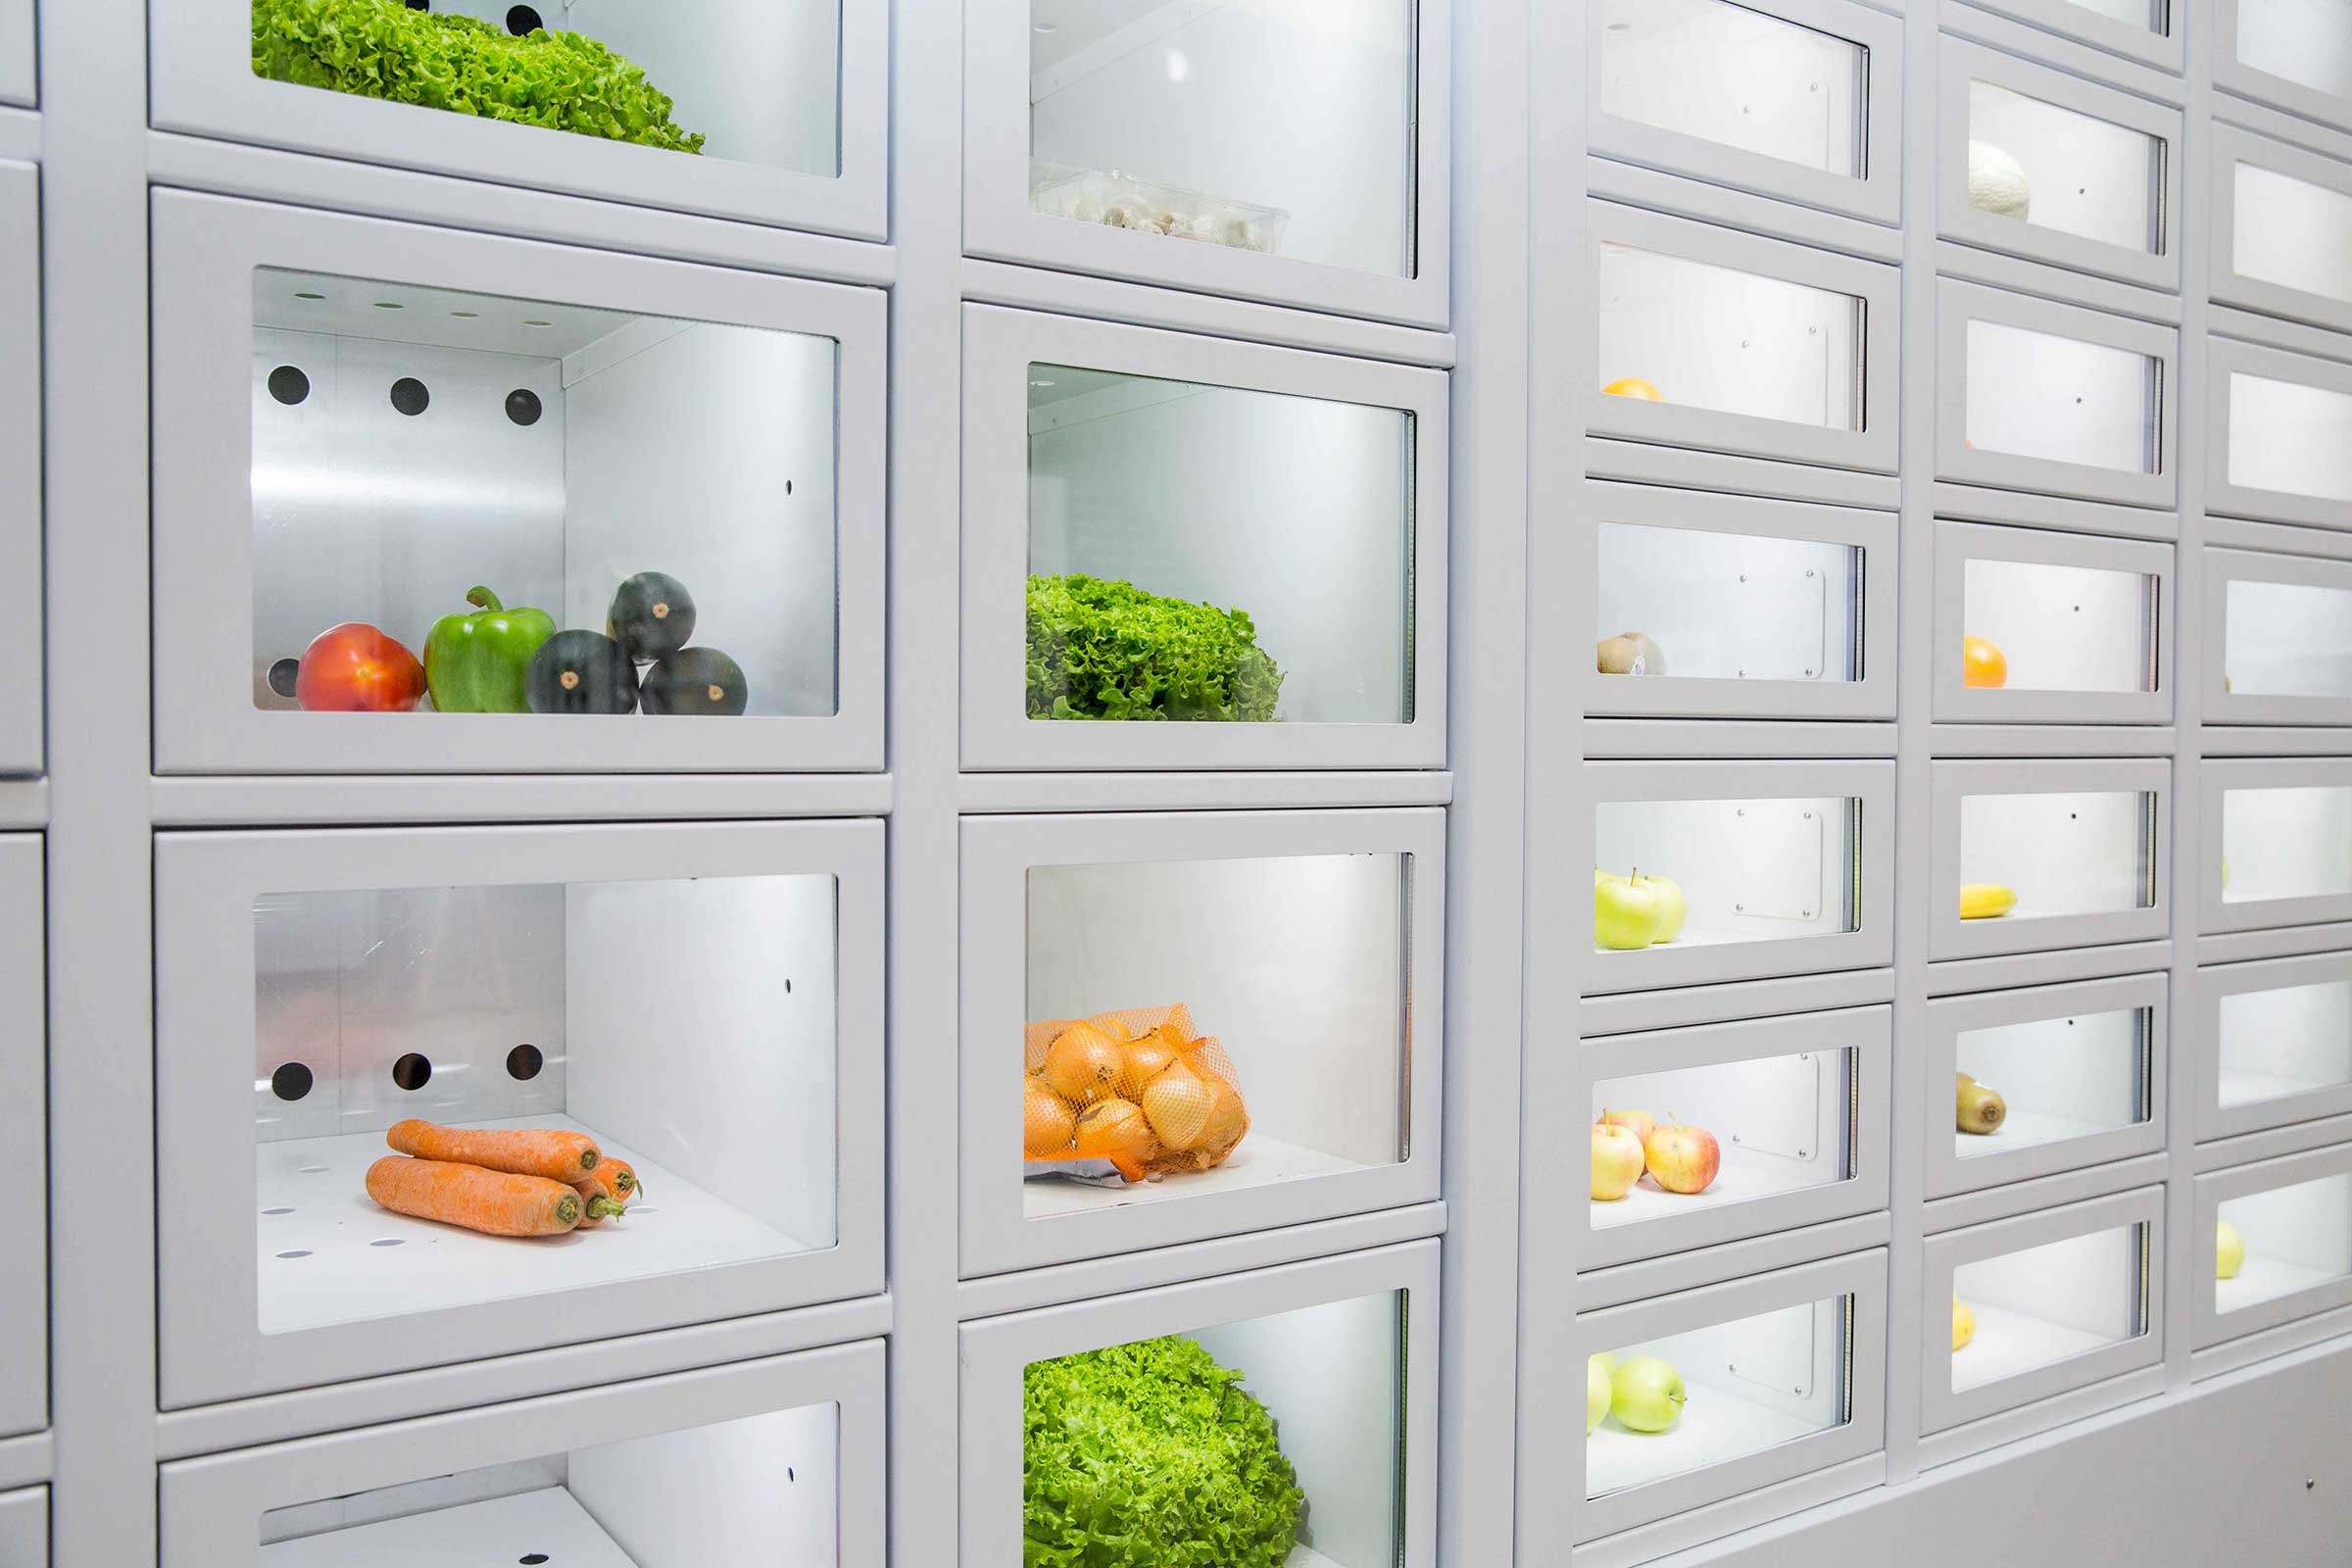 Verduras en un casier français, el distribuidor automático de productores independientes